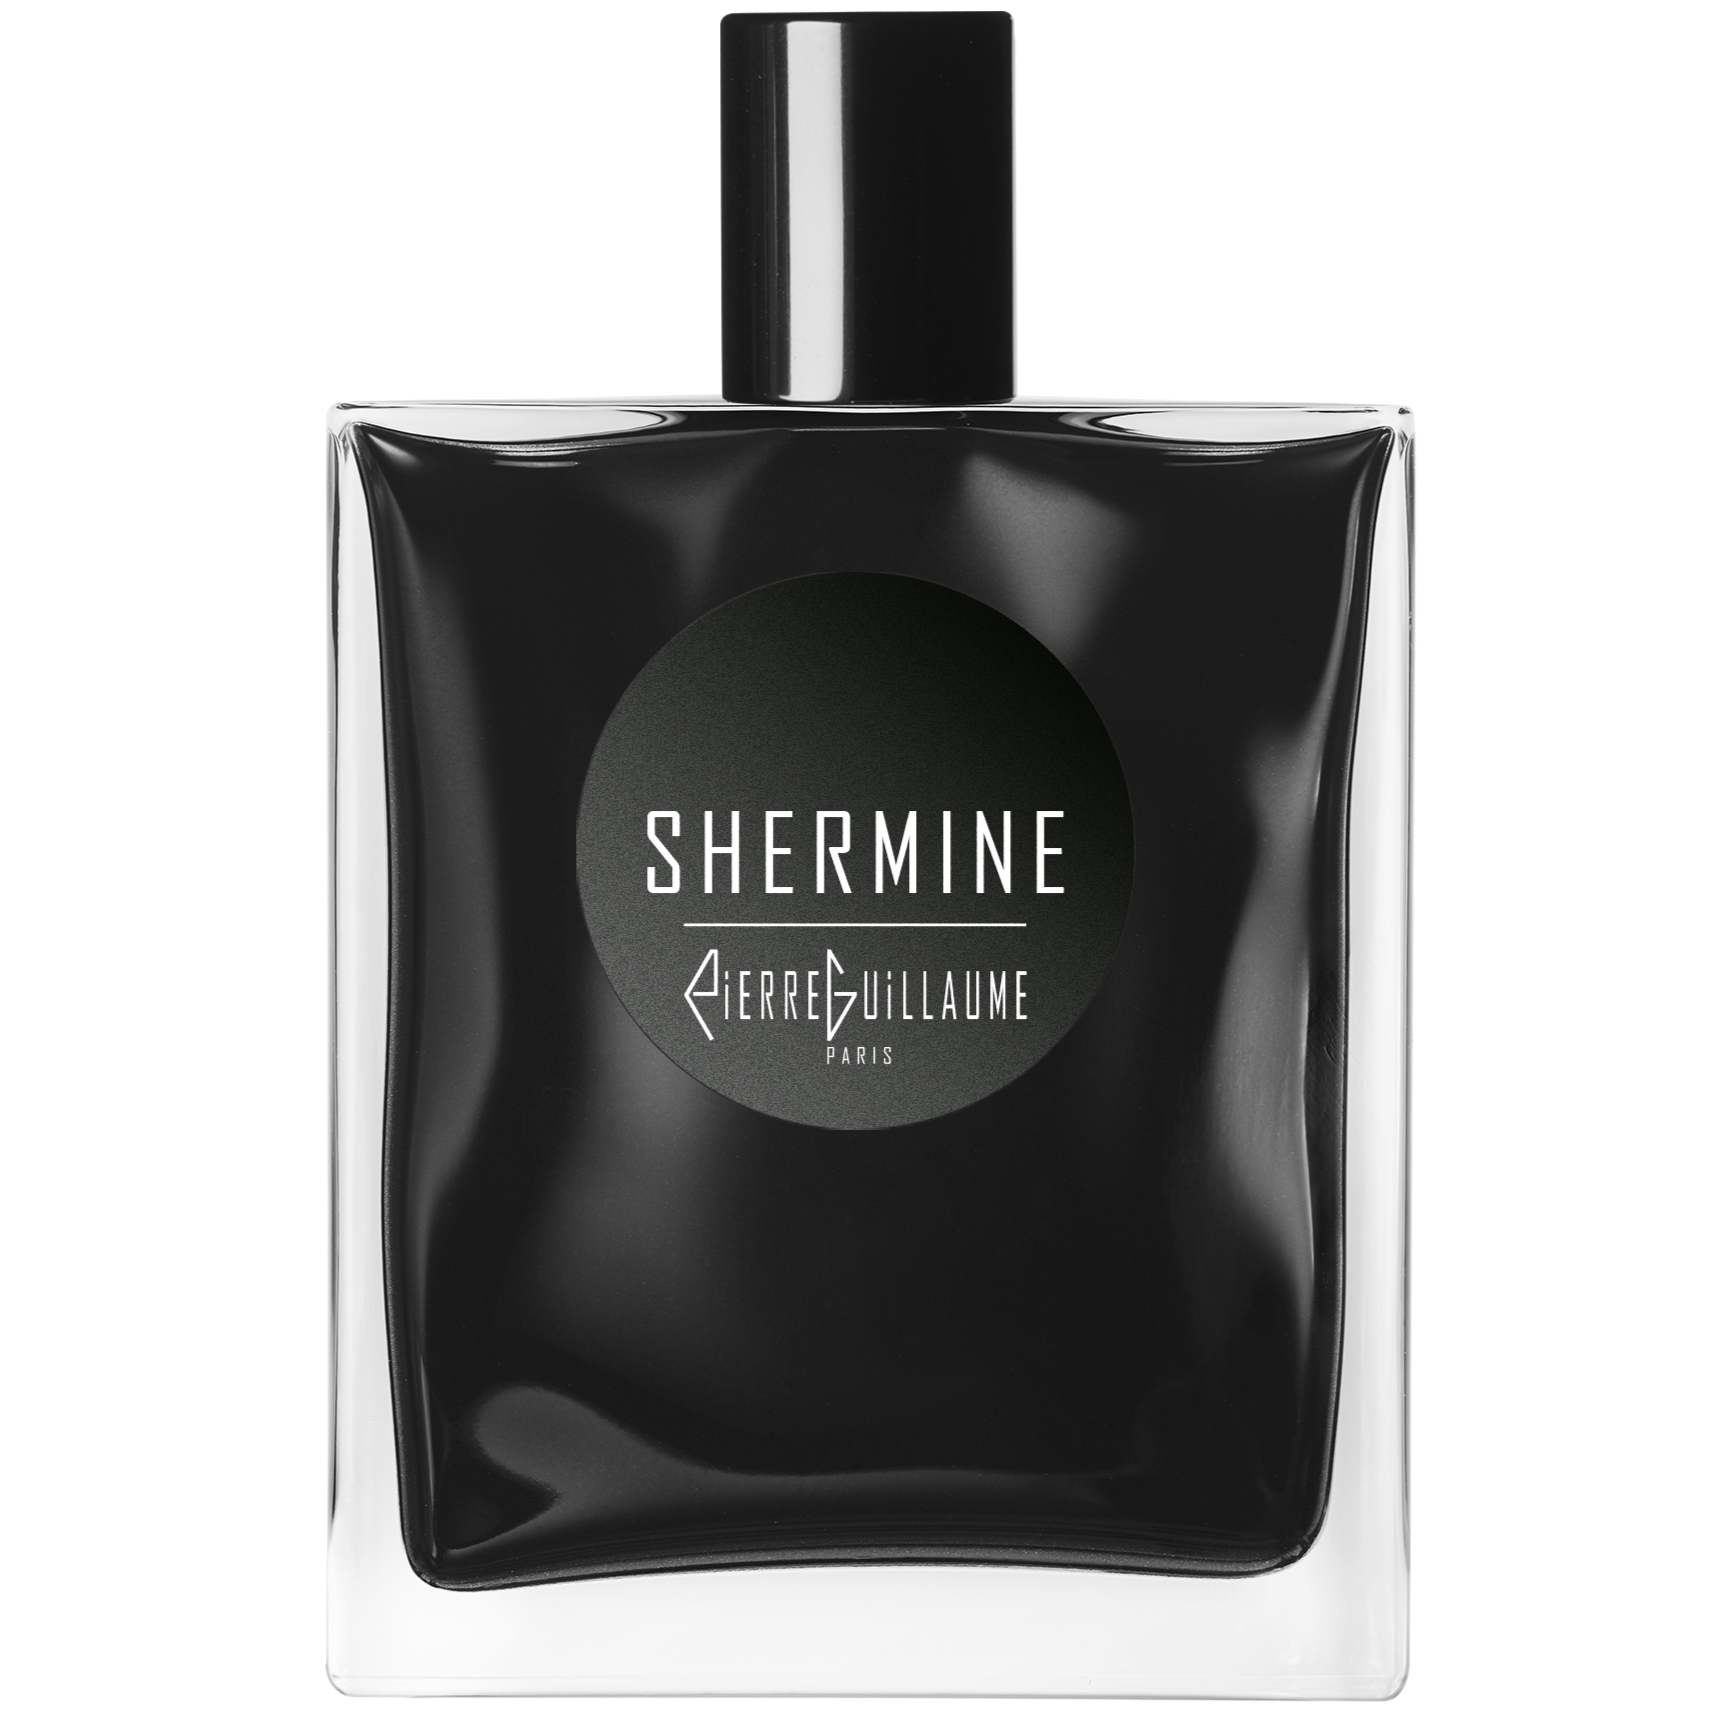 Shermine